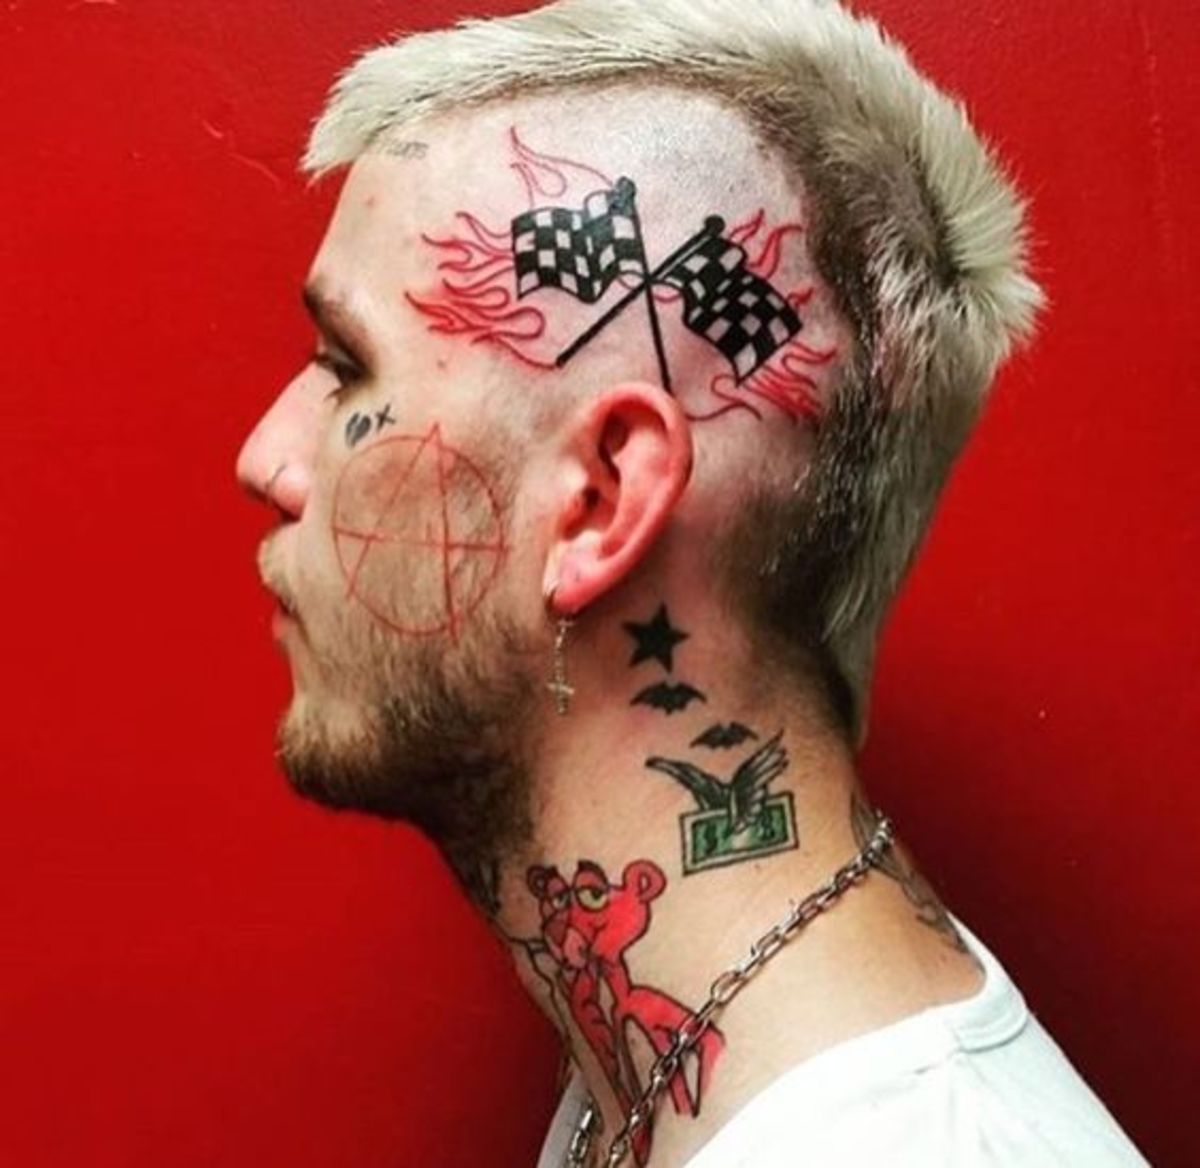 lil+kig+hoved+tatovering